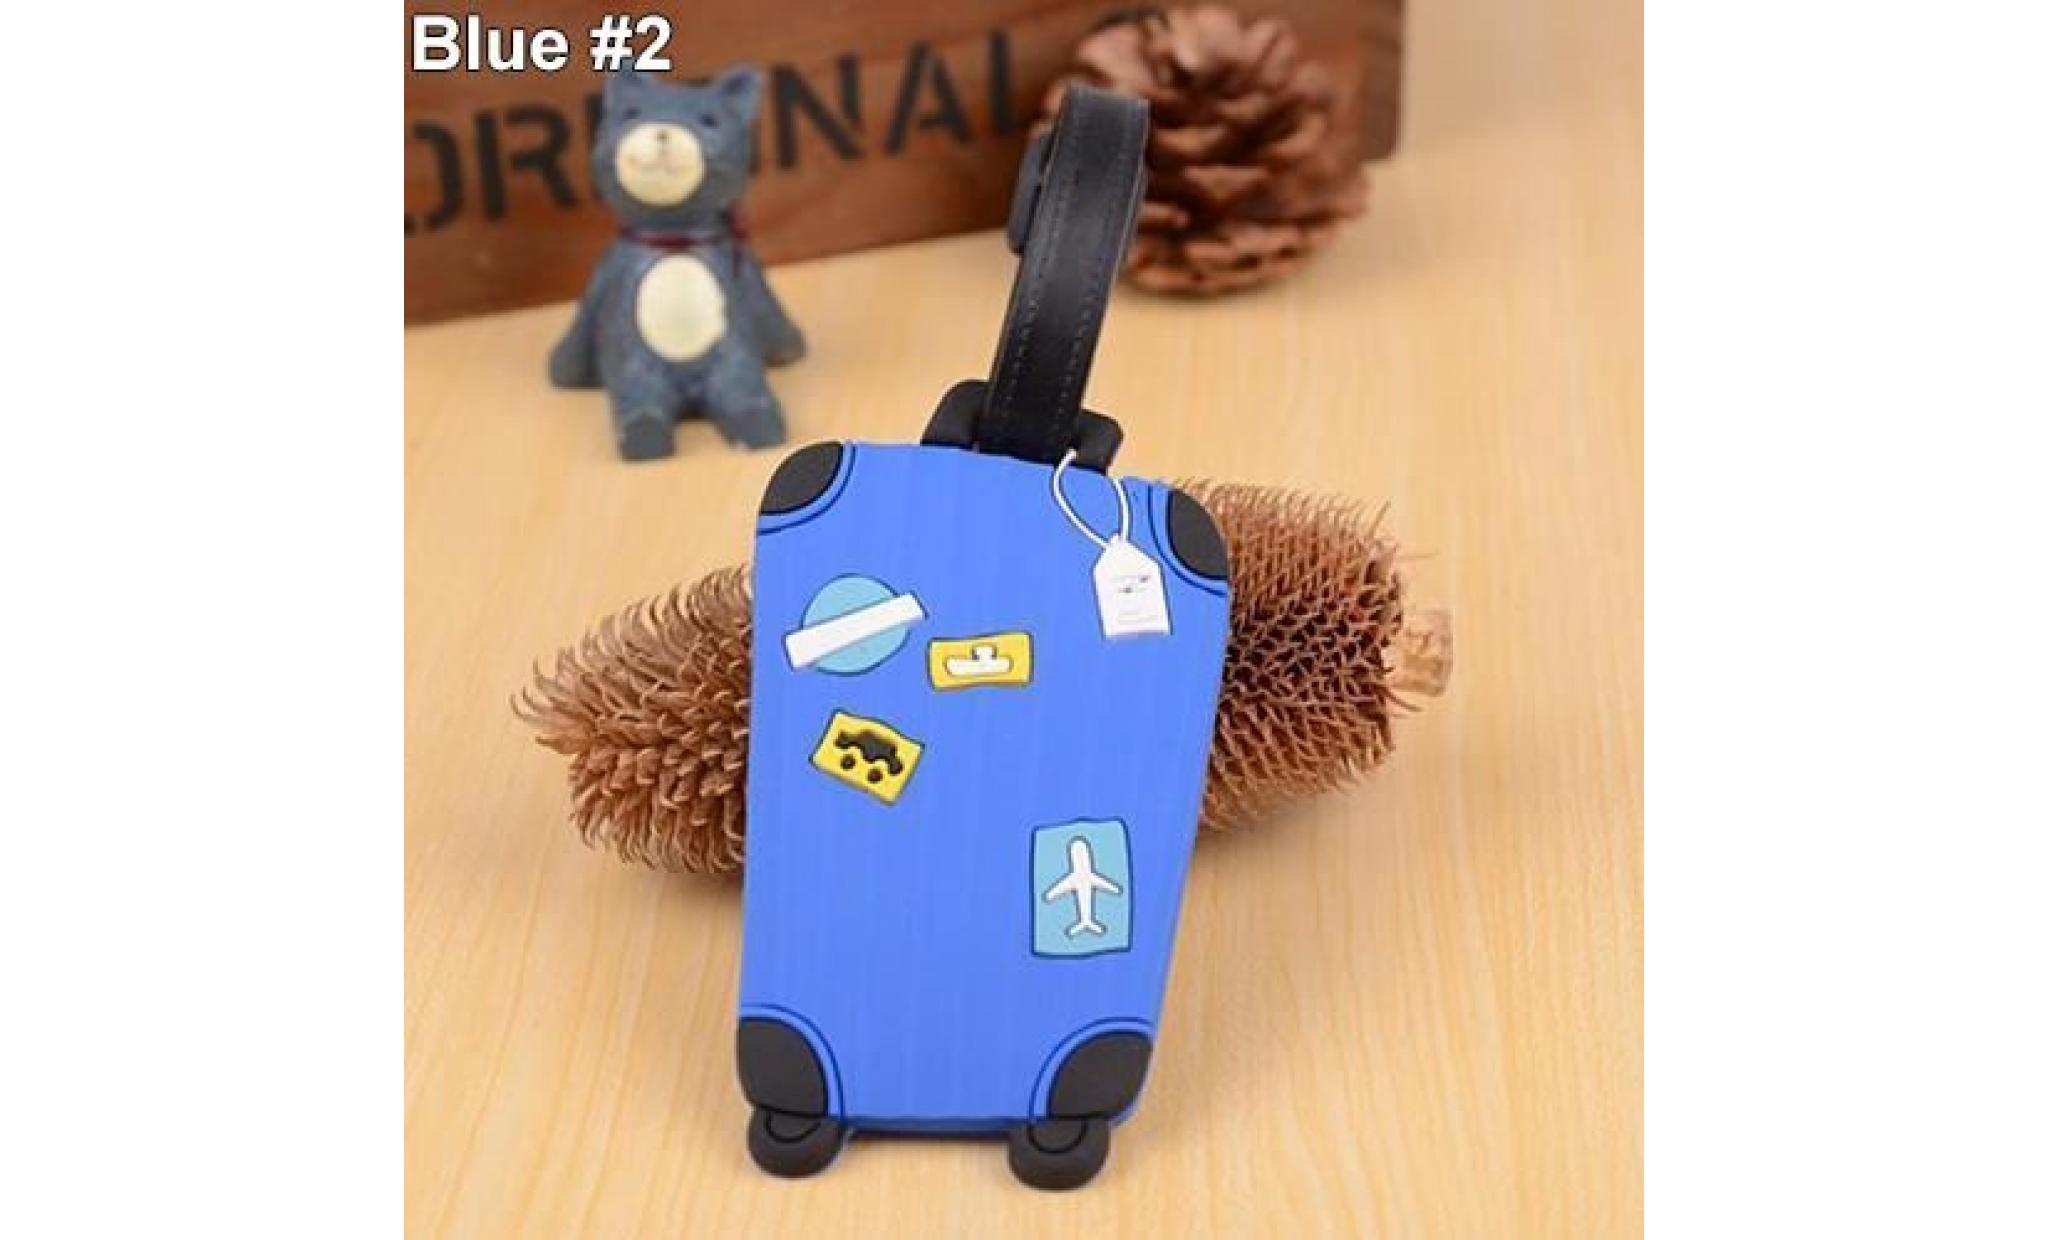 motif de valise etiquettes de bagages nom adresse identifiant adresse identifiant du détenteur etiquette bleu # 2